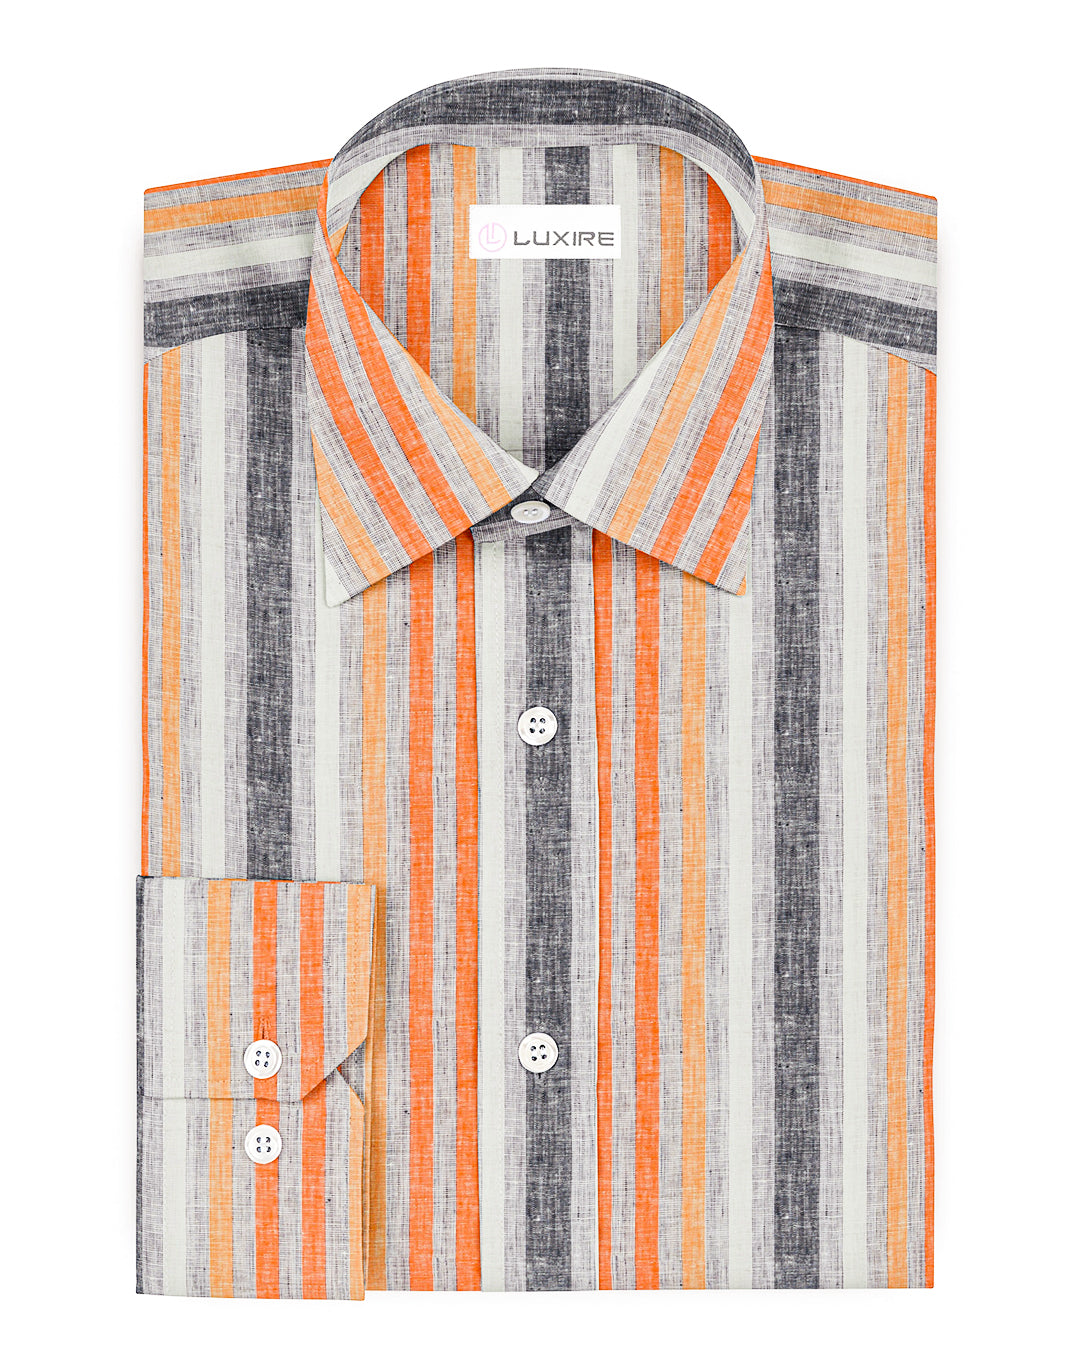 Front view of custom linen shirt for men in orange red white stripes